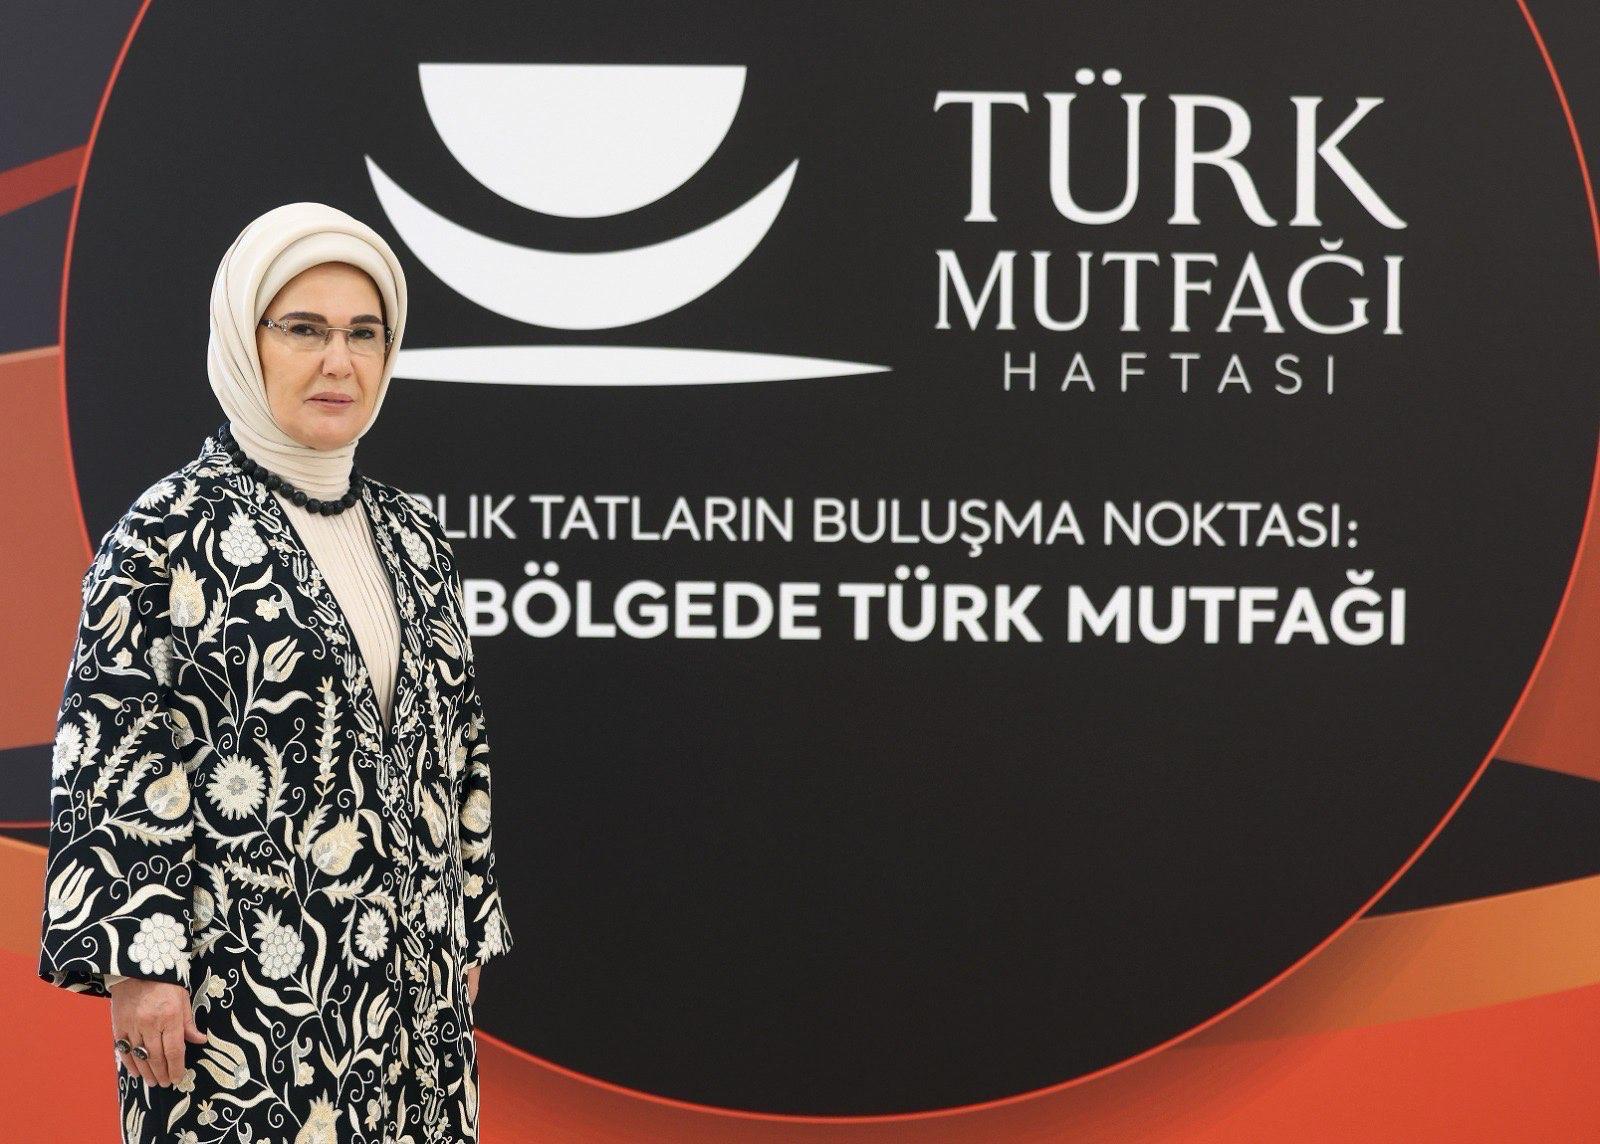 “Asırlık Tatların Buluşma Noktası: Yedi Bölgede Türk Mutfağı” Cumhurbaşkanlığı Külliyesi’nde sergilendi